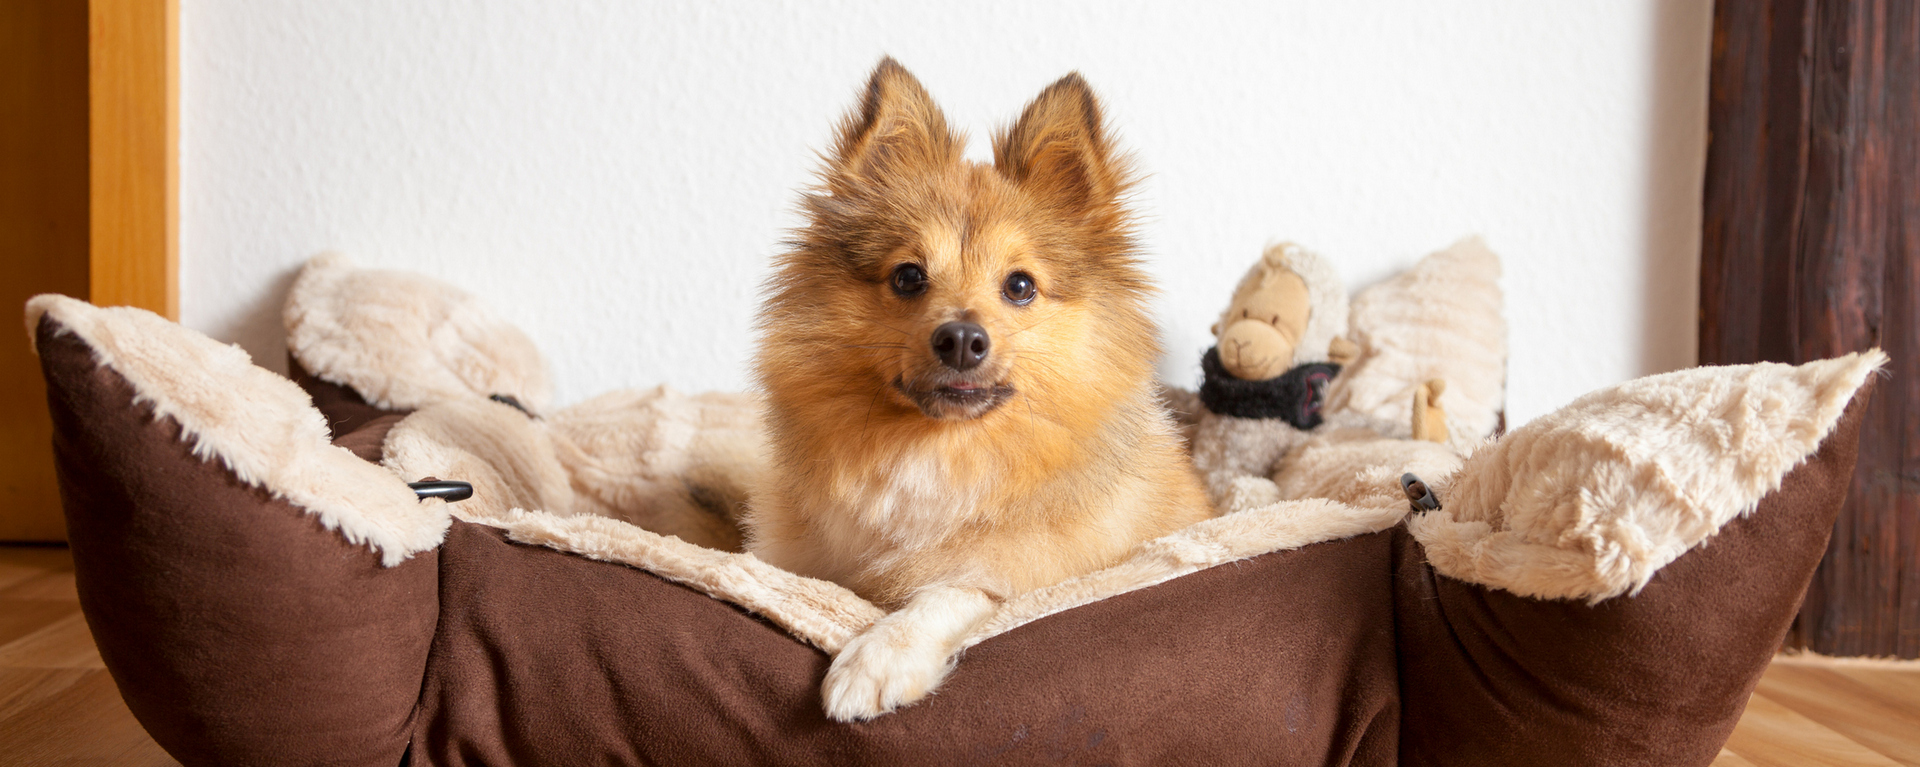 Причины и лечение рвоты у собак